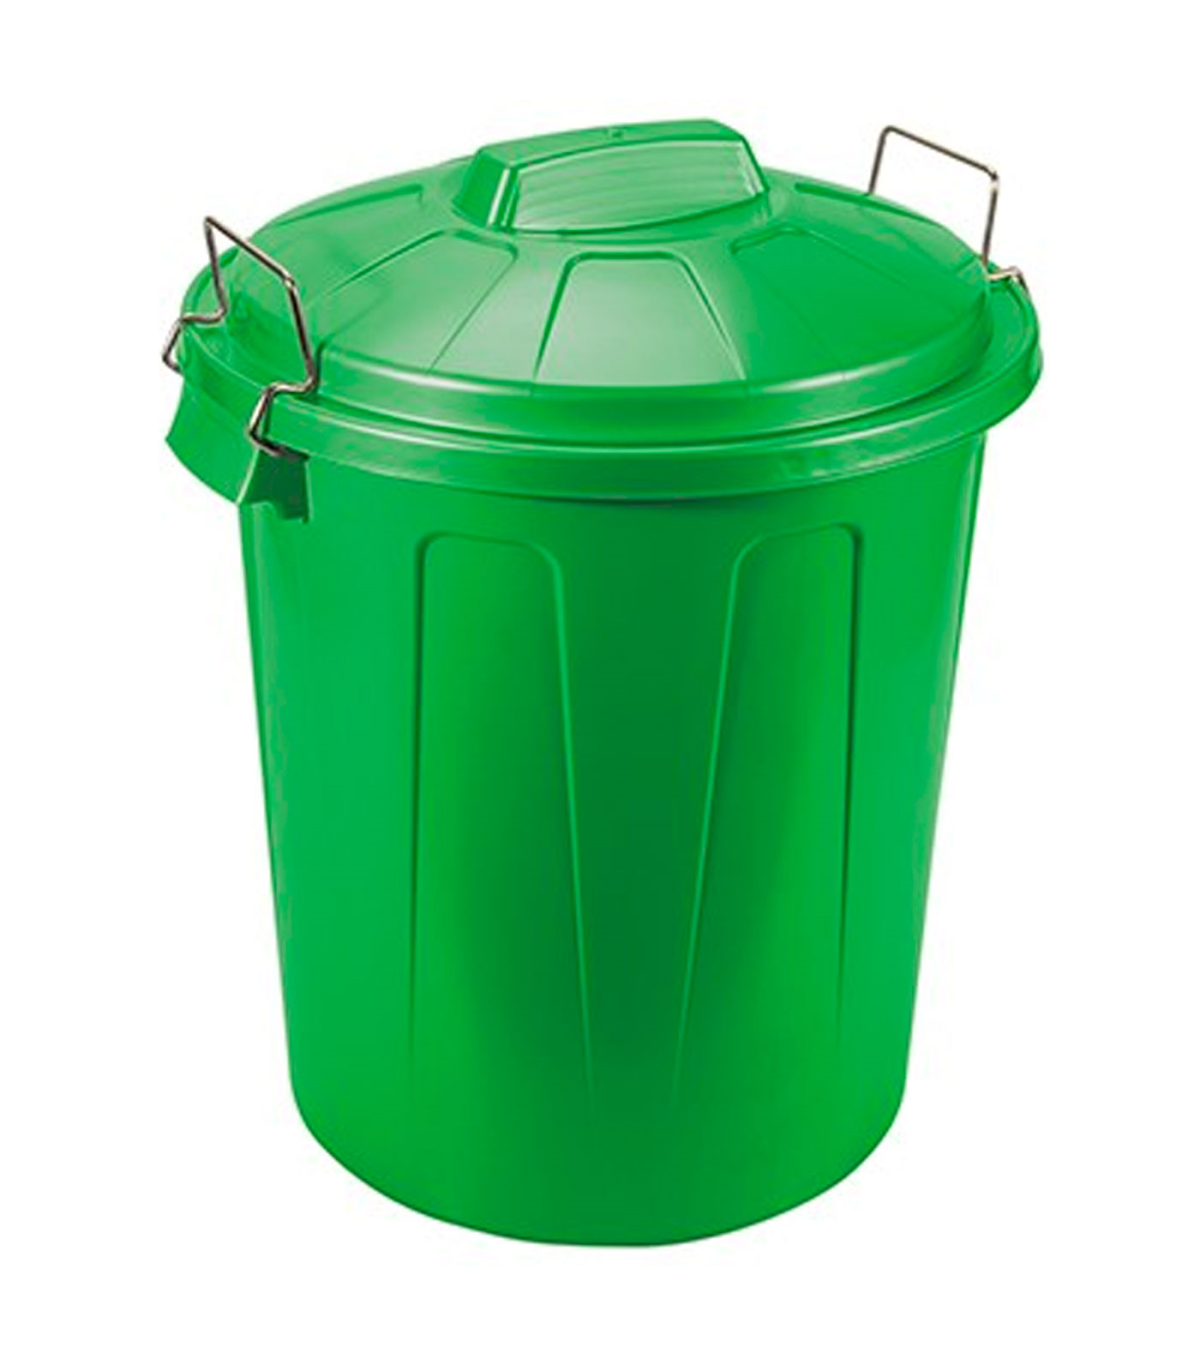 Tradineur - Cubo de basura de plástico con tapa y asas metálicas,  contenedor de residuos, papelera, reciclaje, industrial, fabri